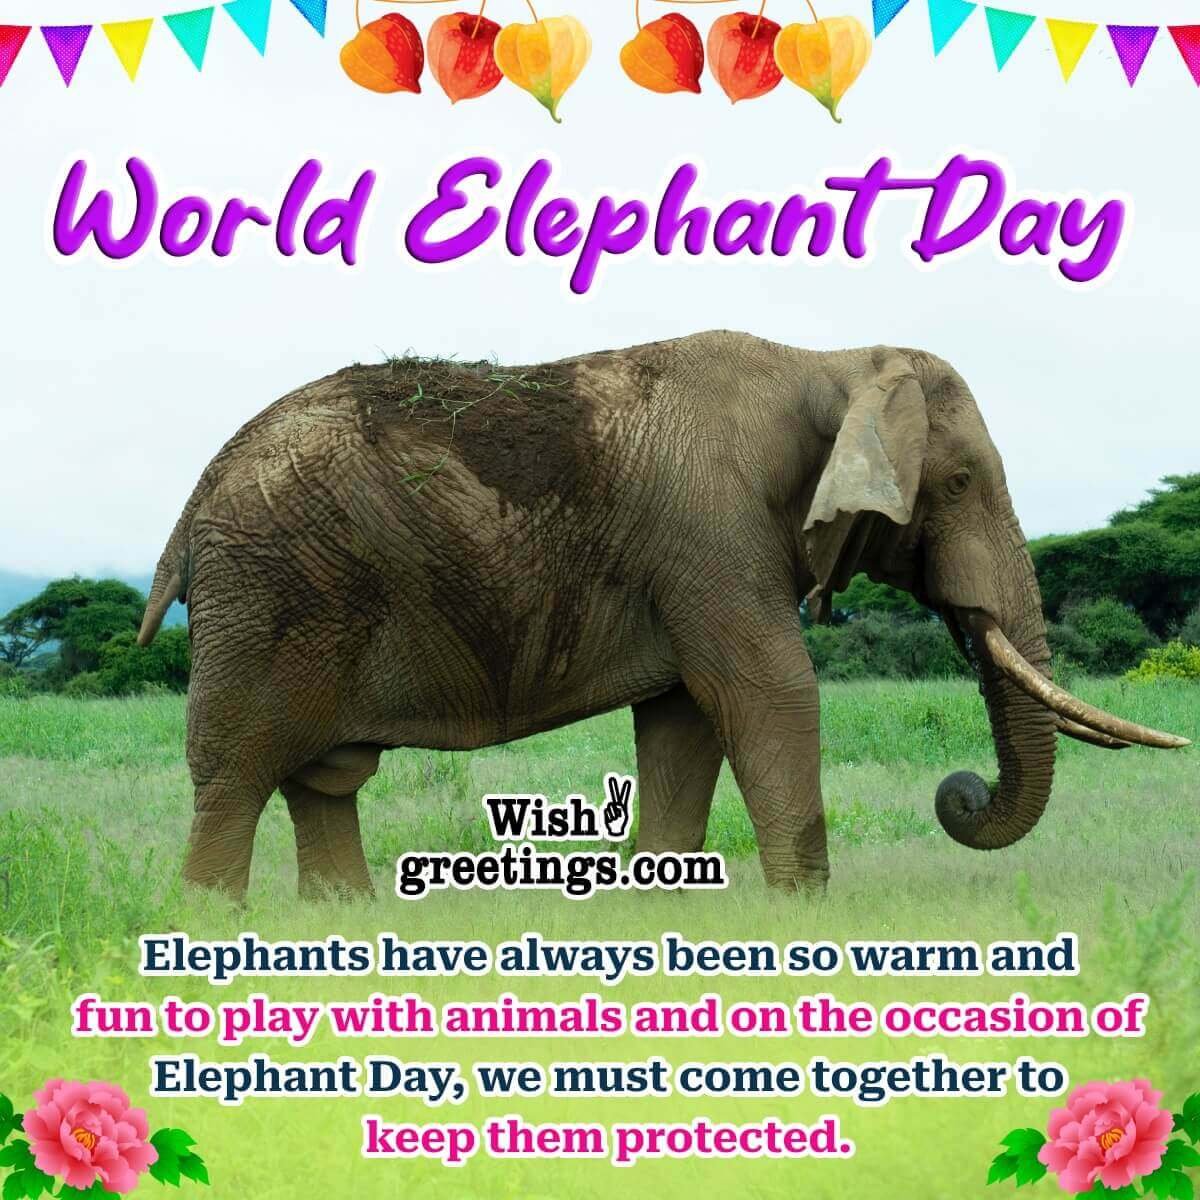 World Elephant Day Message Photo